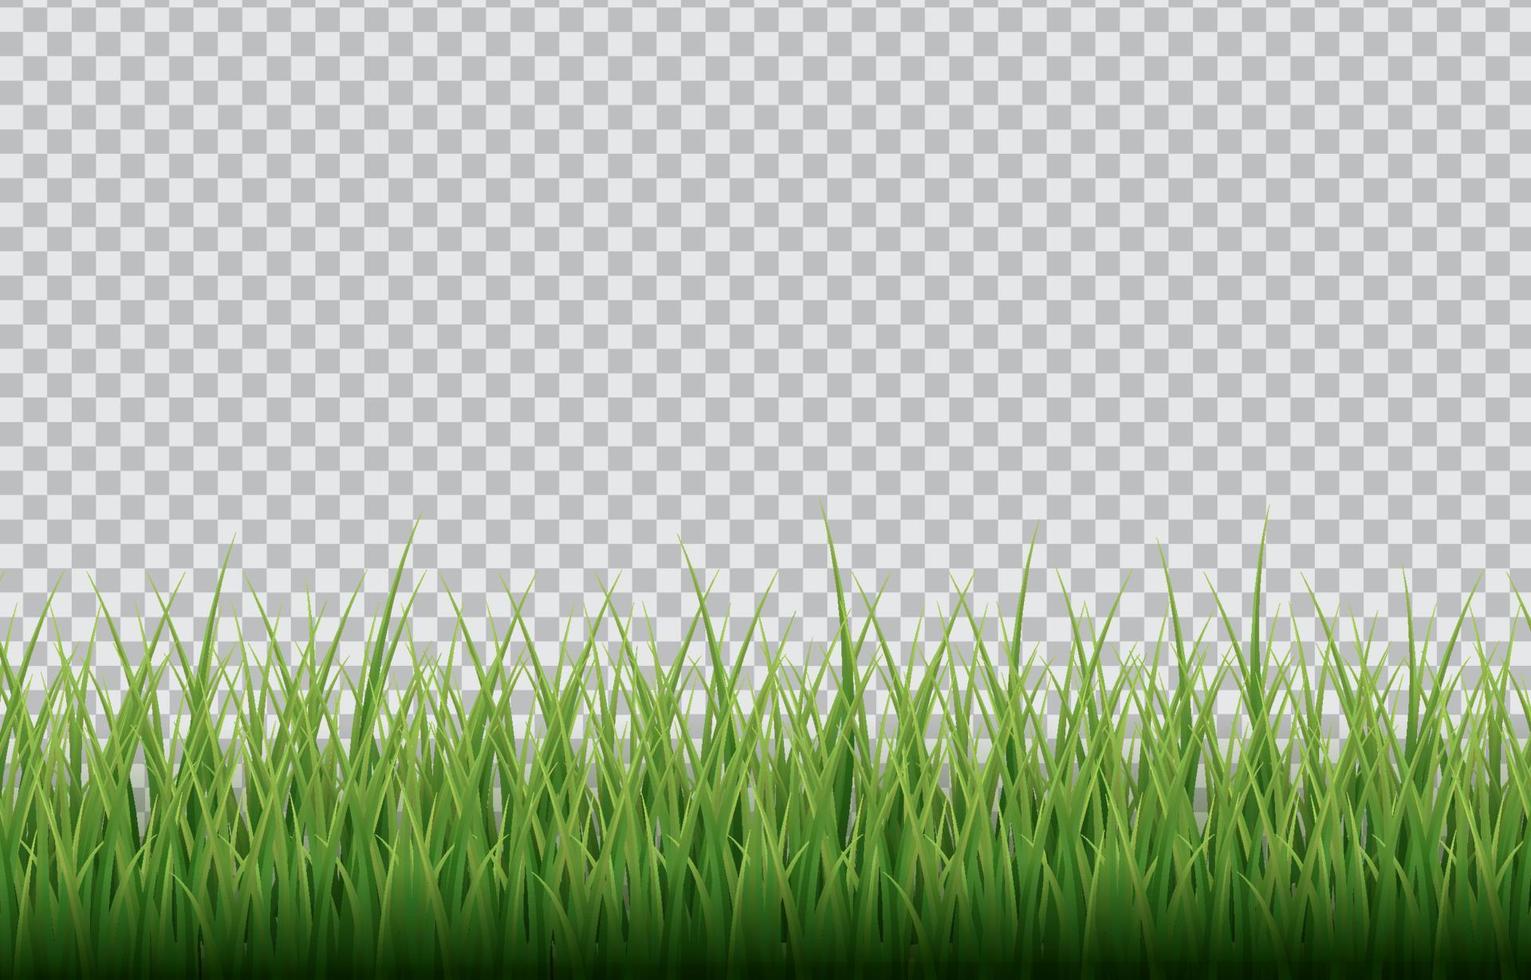 Gras mit transparentem Hintergrund vektor